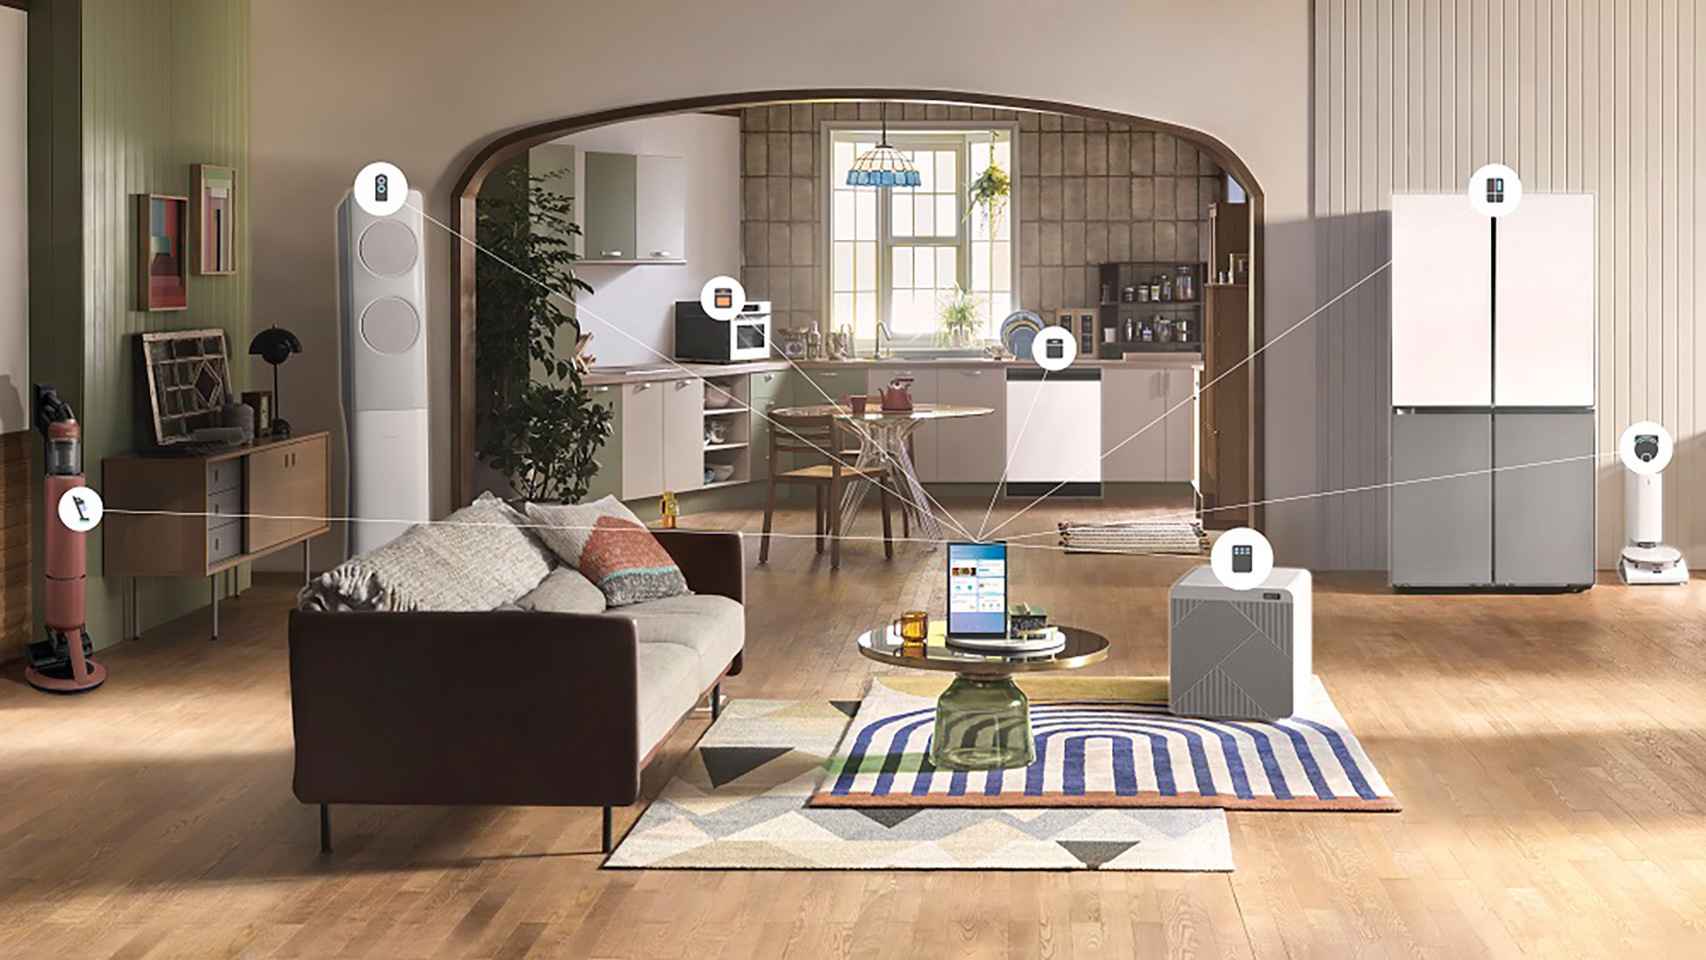 SmartThings Home Life de Samsung, una nueva experiencia para el hogar y la familia